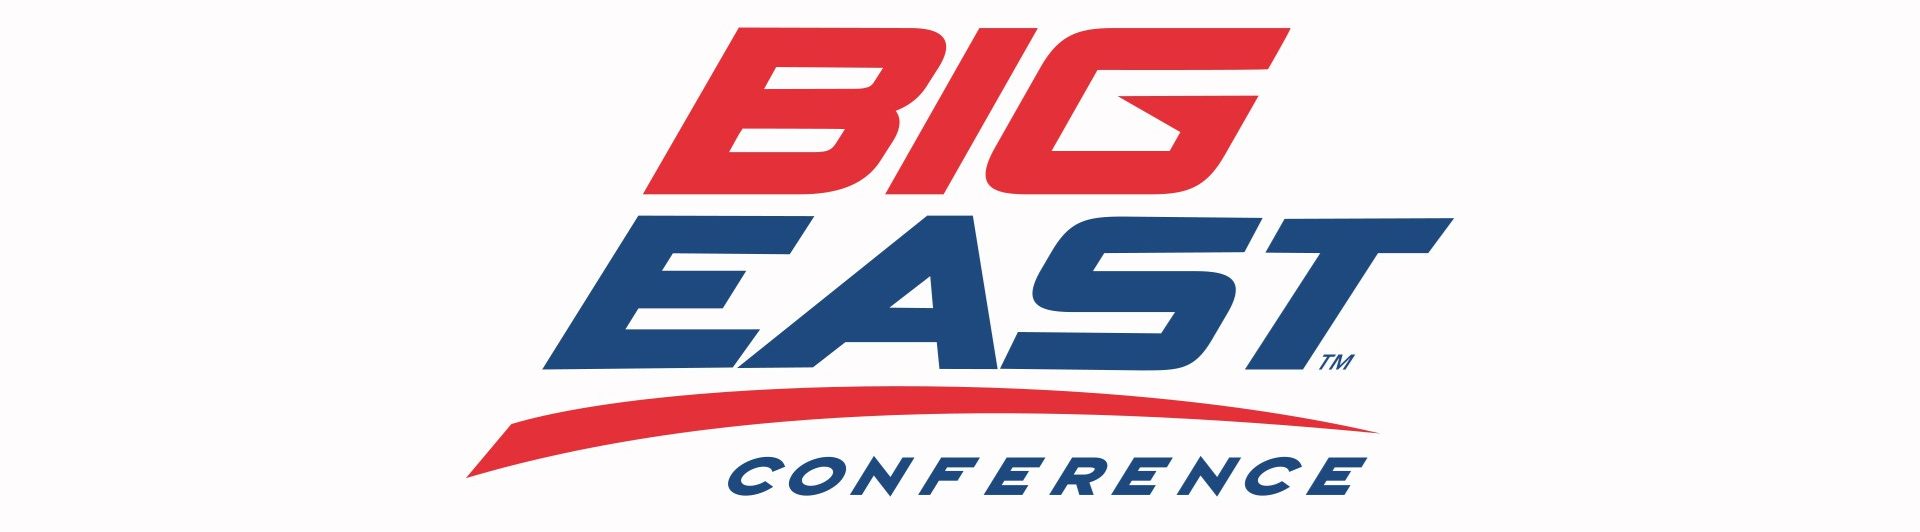 Big East Conference Banner